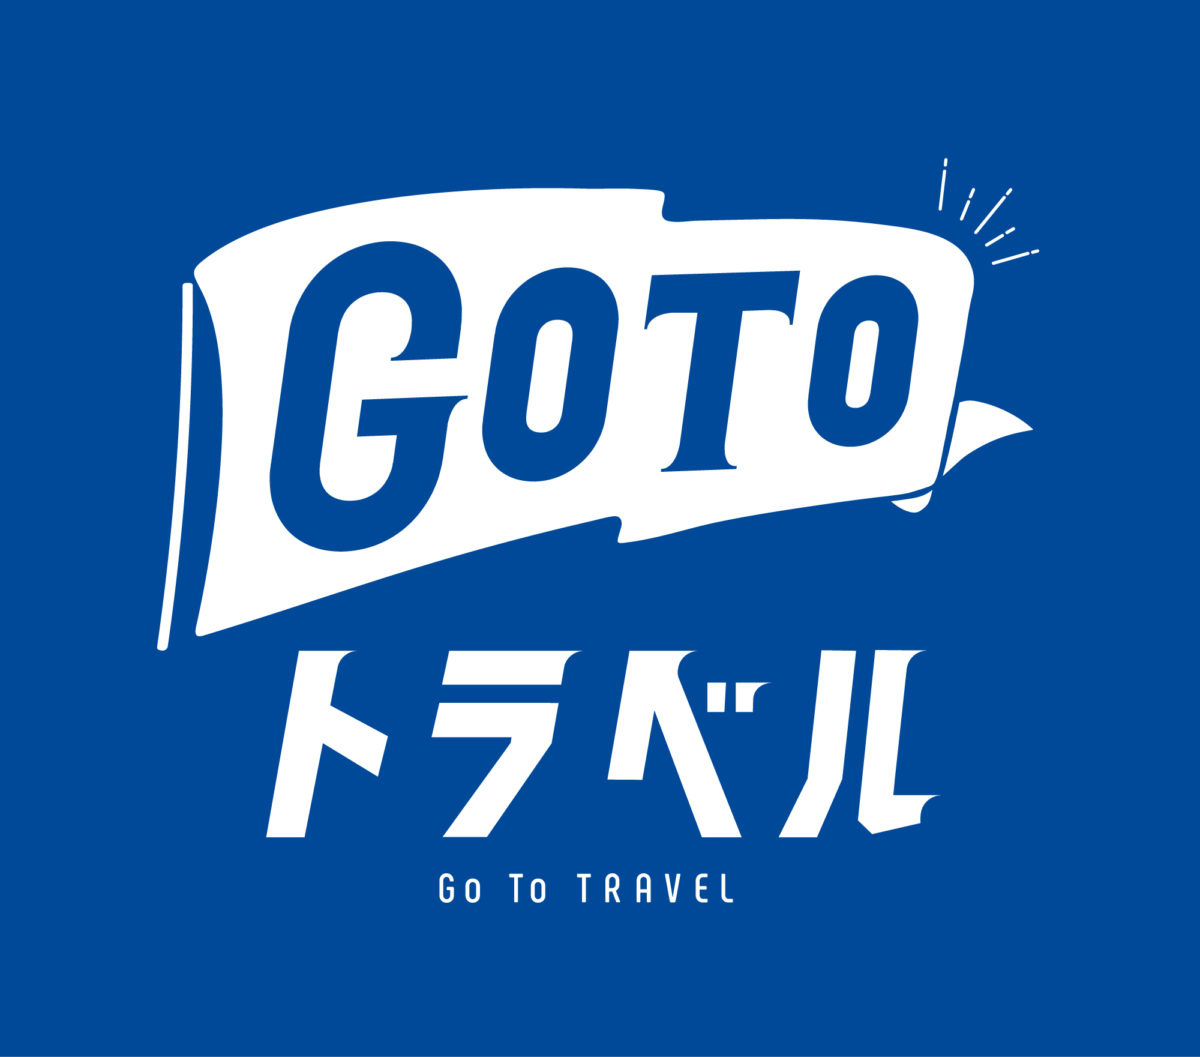 【1/8更新】オオワシ・オジロワシウォッチングツアーのGoToキャンペーン適用除外について